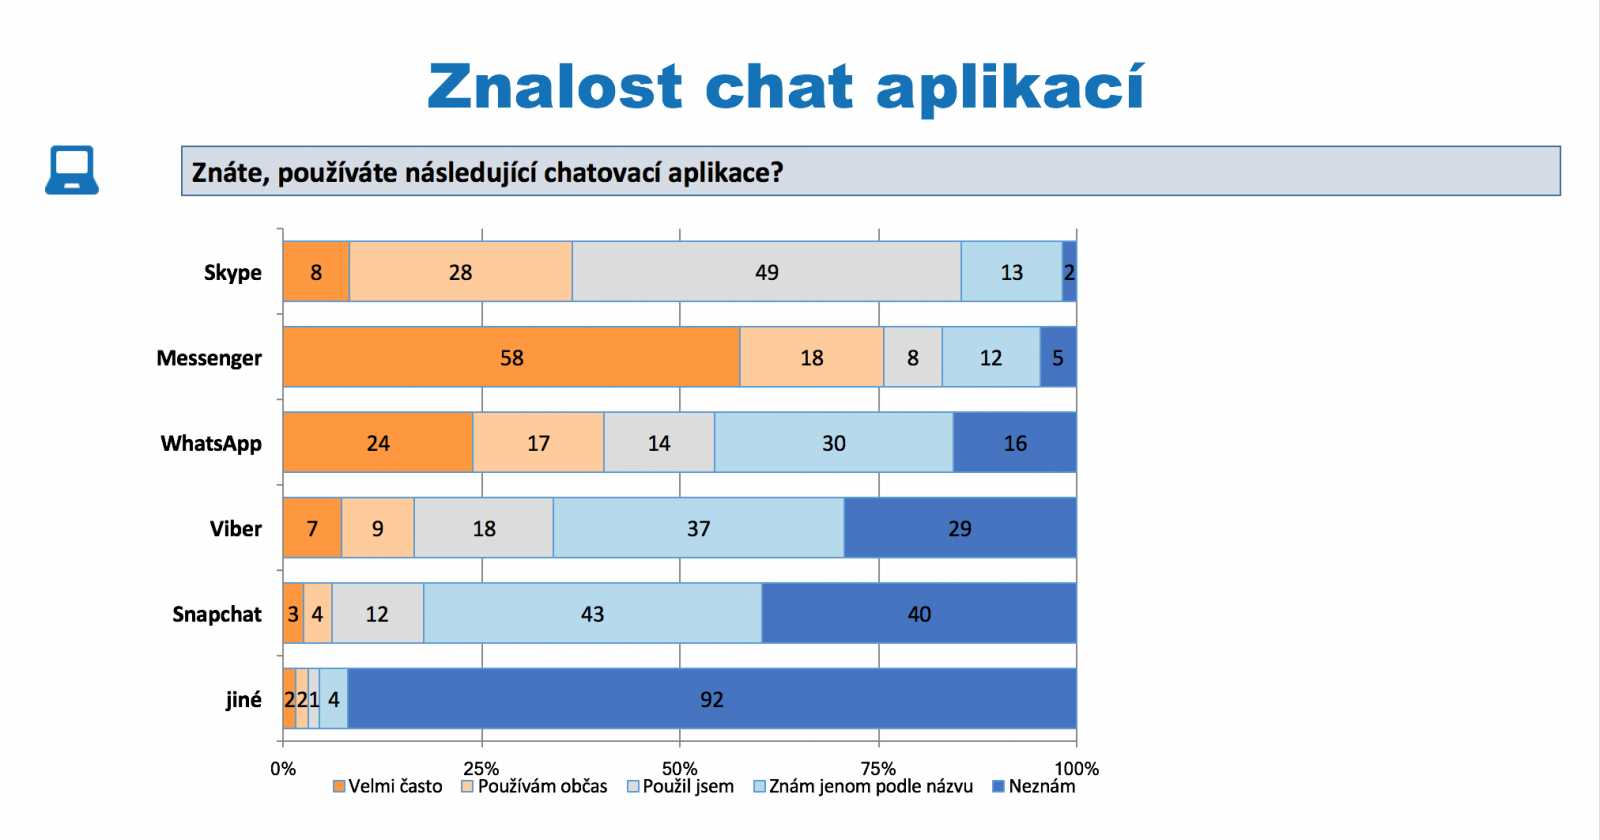 Nejpopulárnějším kecálkem v Česku je Messenger